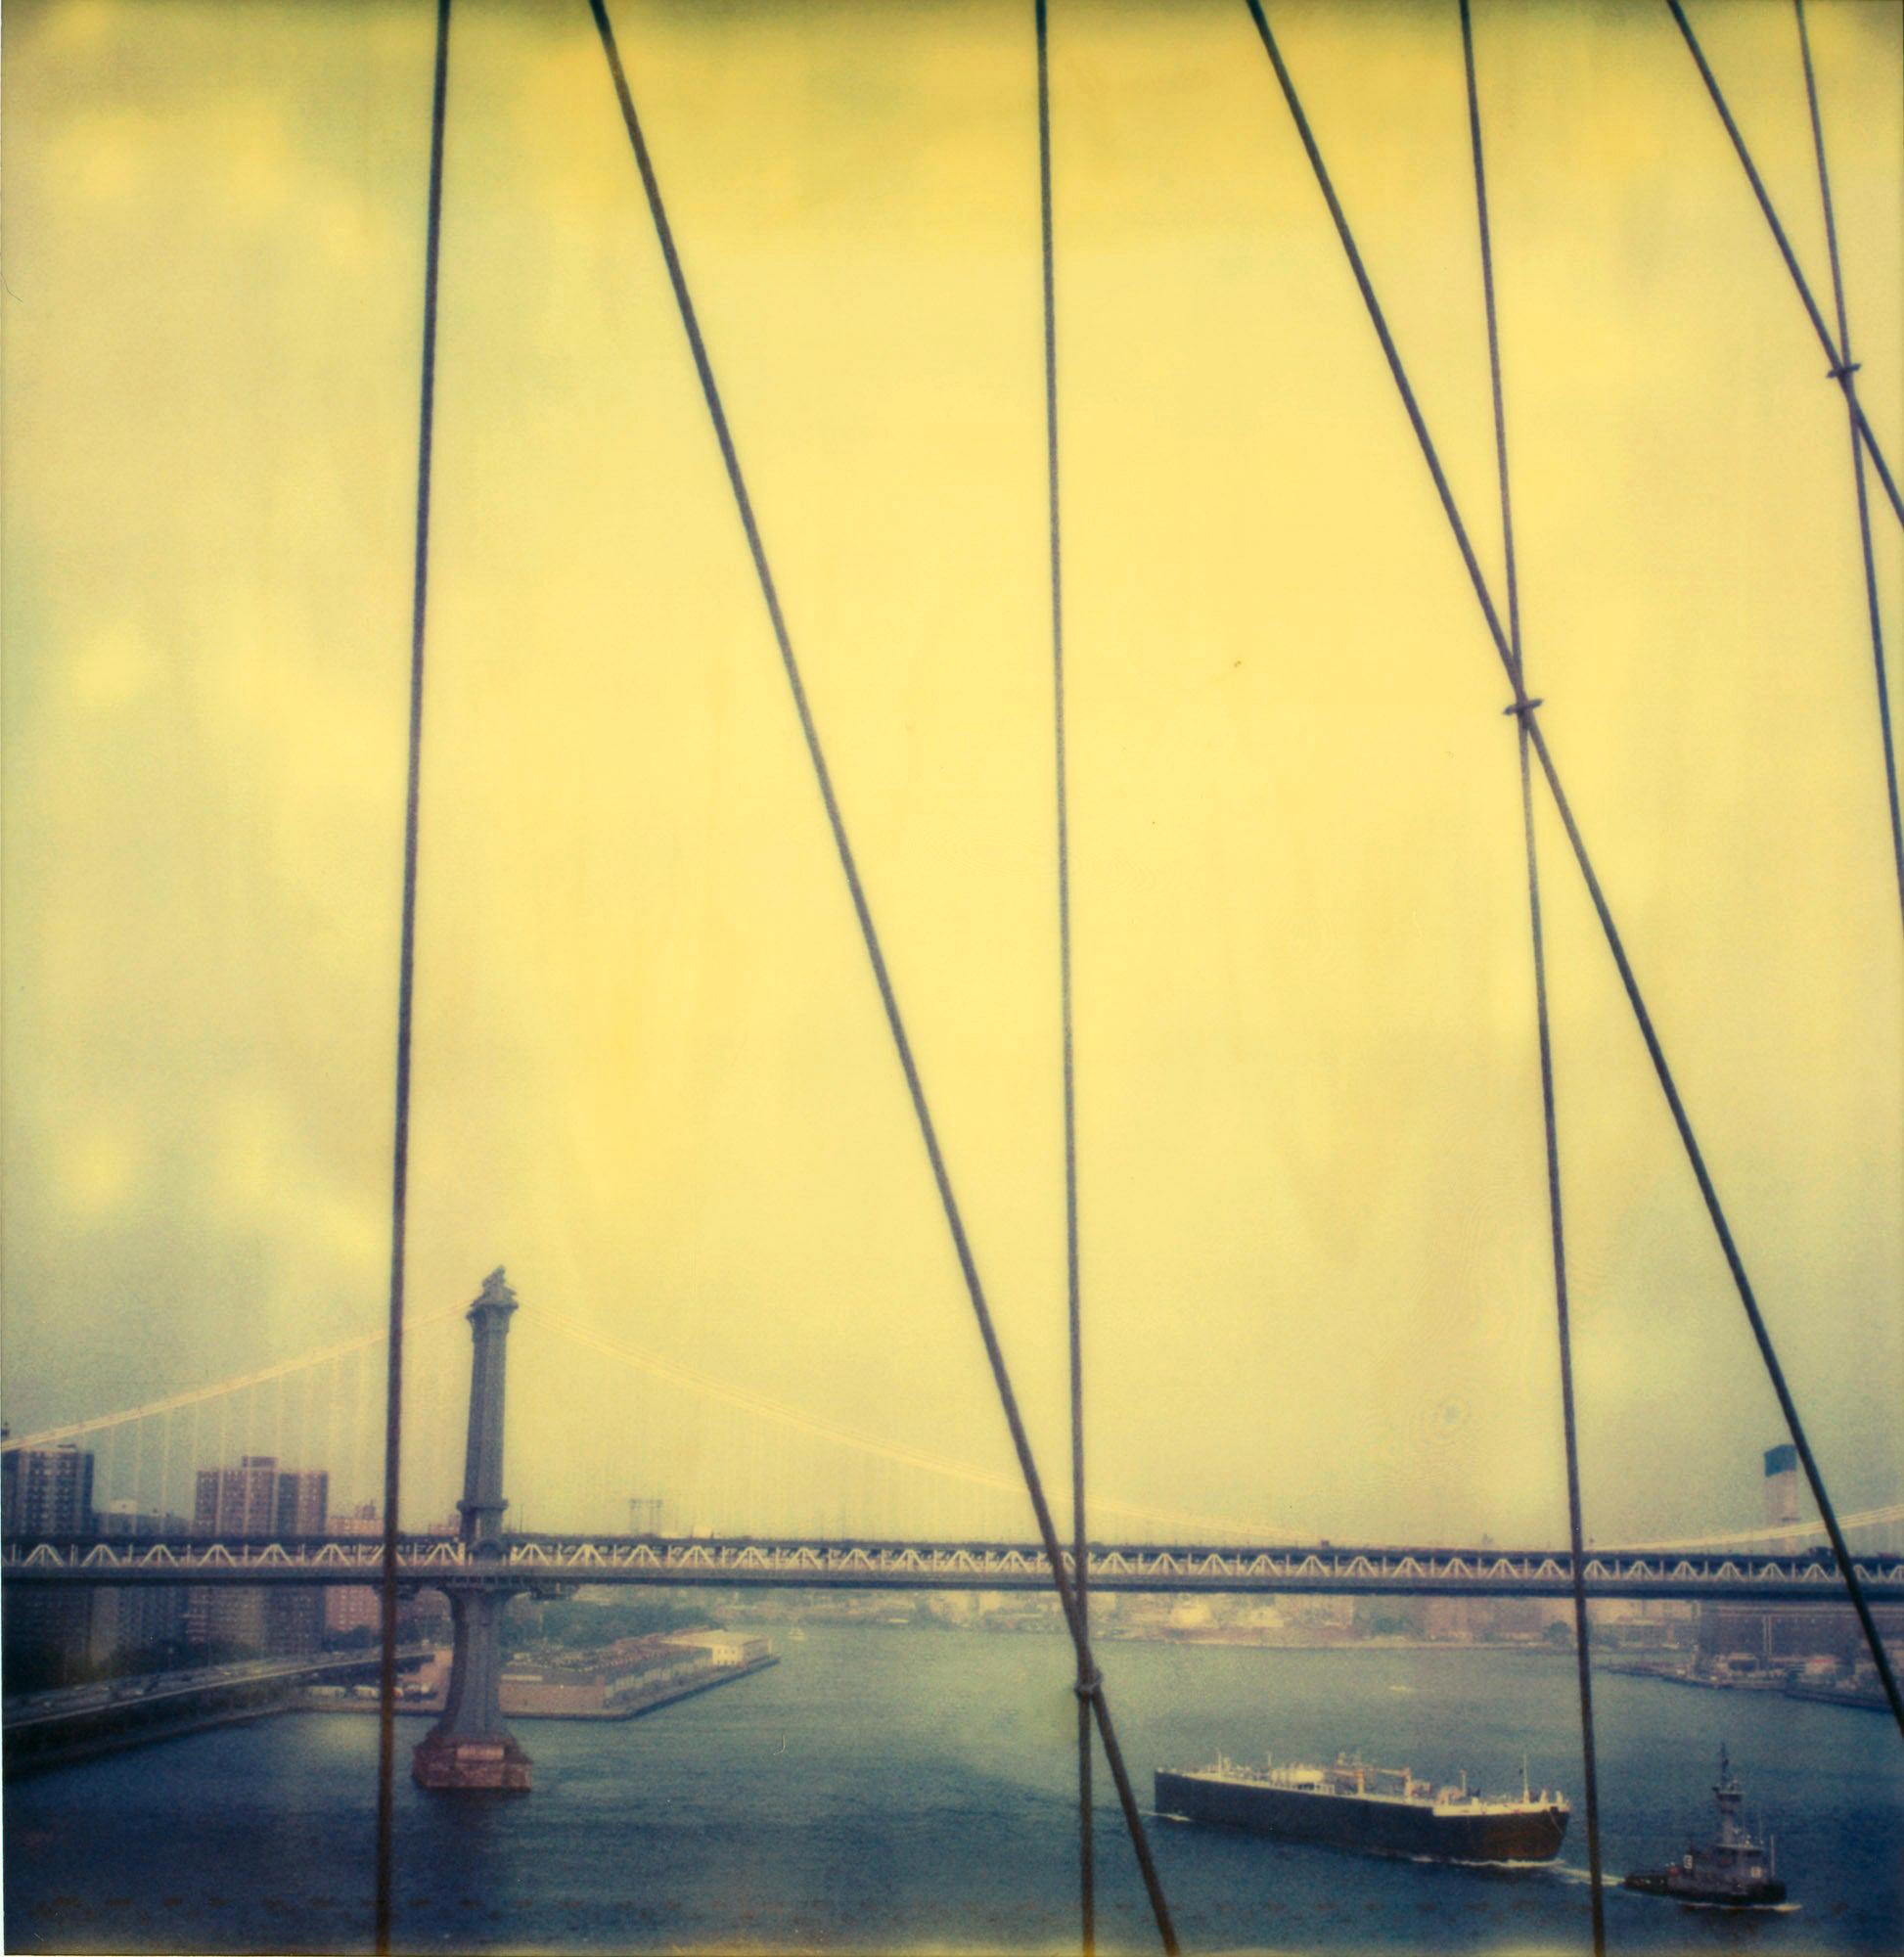 Color Photograph Stefanie Schneider - Vues anciennes du pont III (Stay)